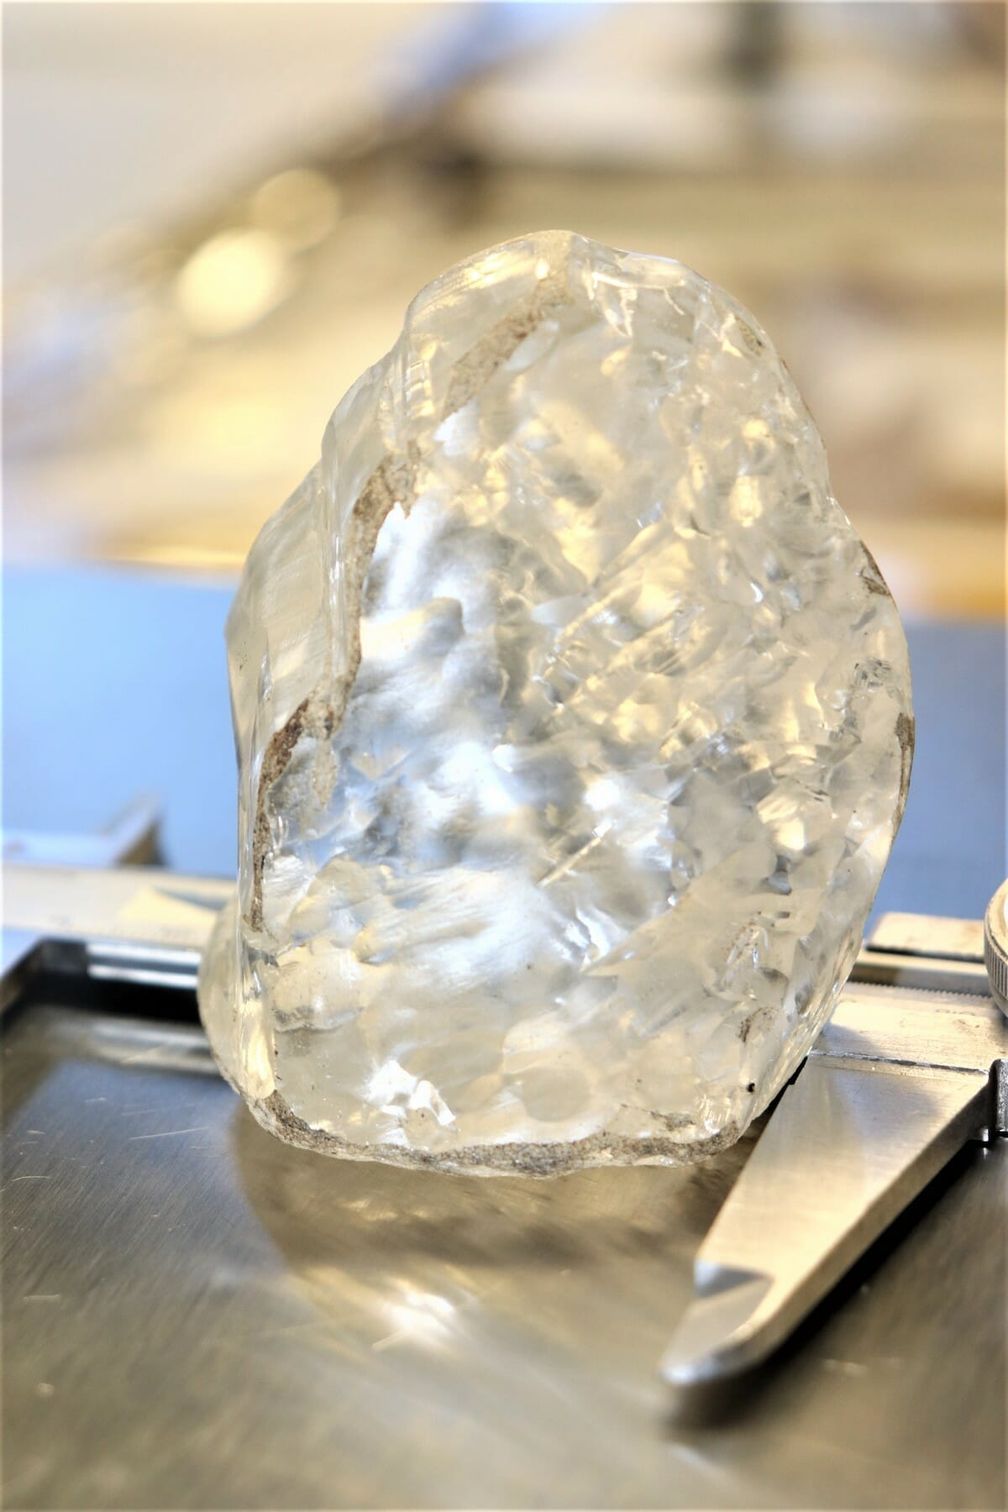 Алмаз весом 1098 карат, найденный в Ботсване компанией Debswana Diamond